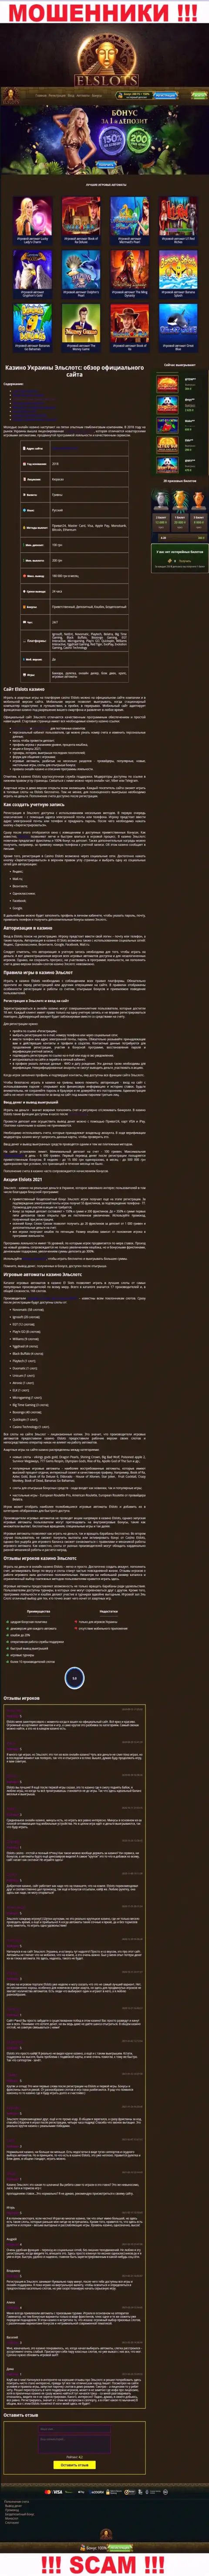 Внешний вид официальной web-странички мошеннической компании ЕлСлотс